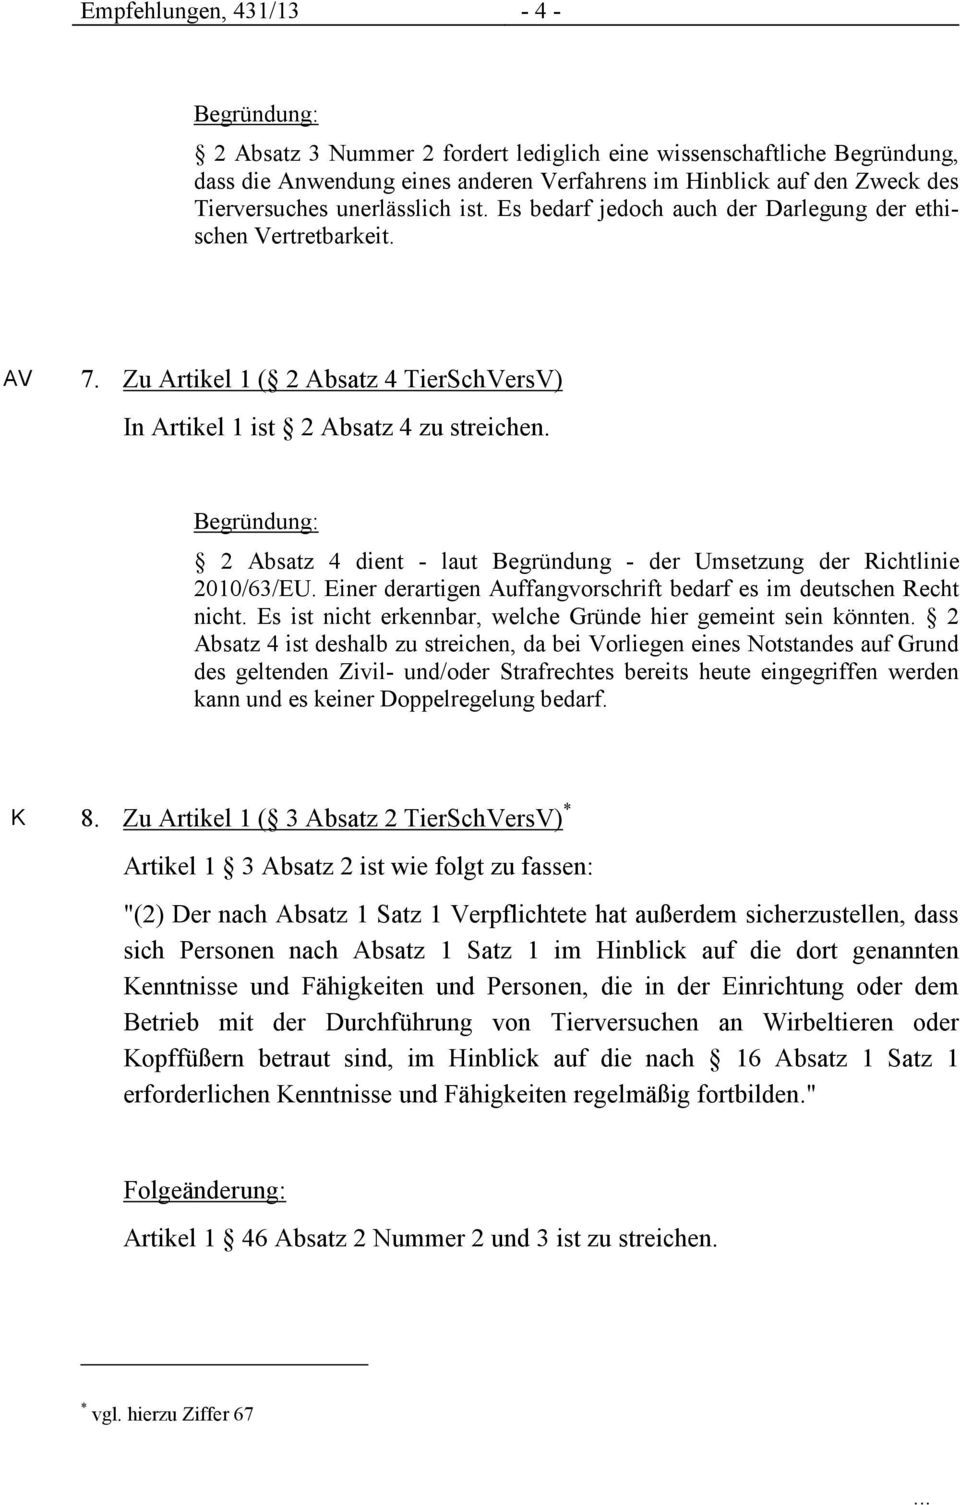 2 Absatz 4 dient - laut Begründung - der Umsetzung der Richtlinie 2010/63/EU. Einer derartigen Auffangvorschrift bedarf es im deutschen Recht nicht.